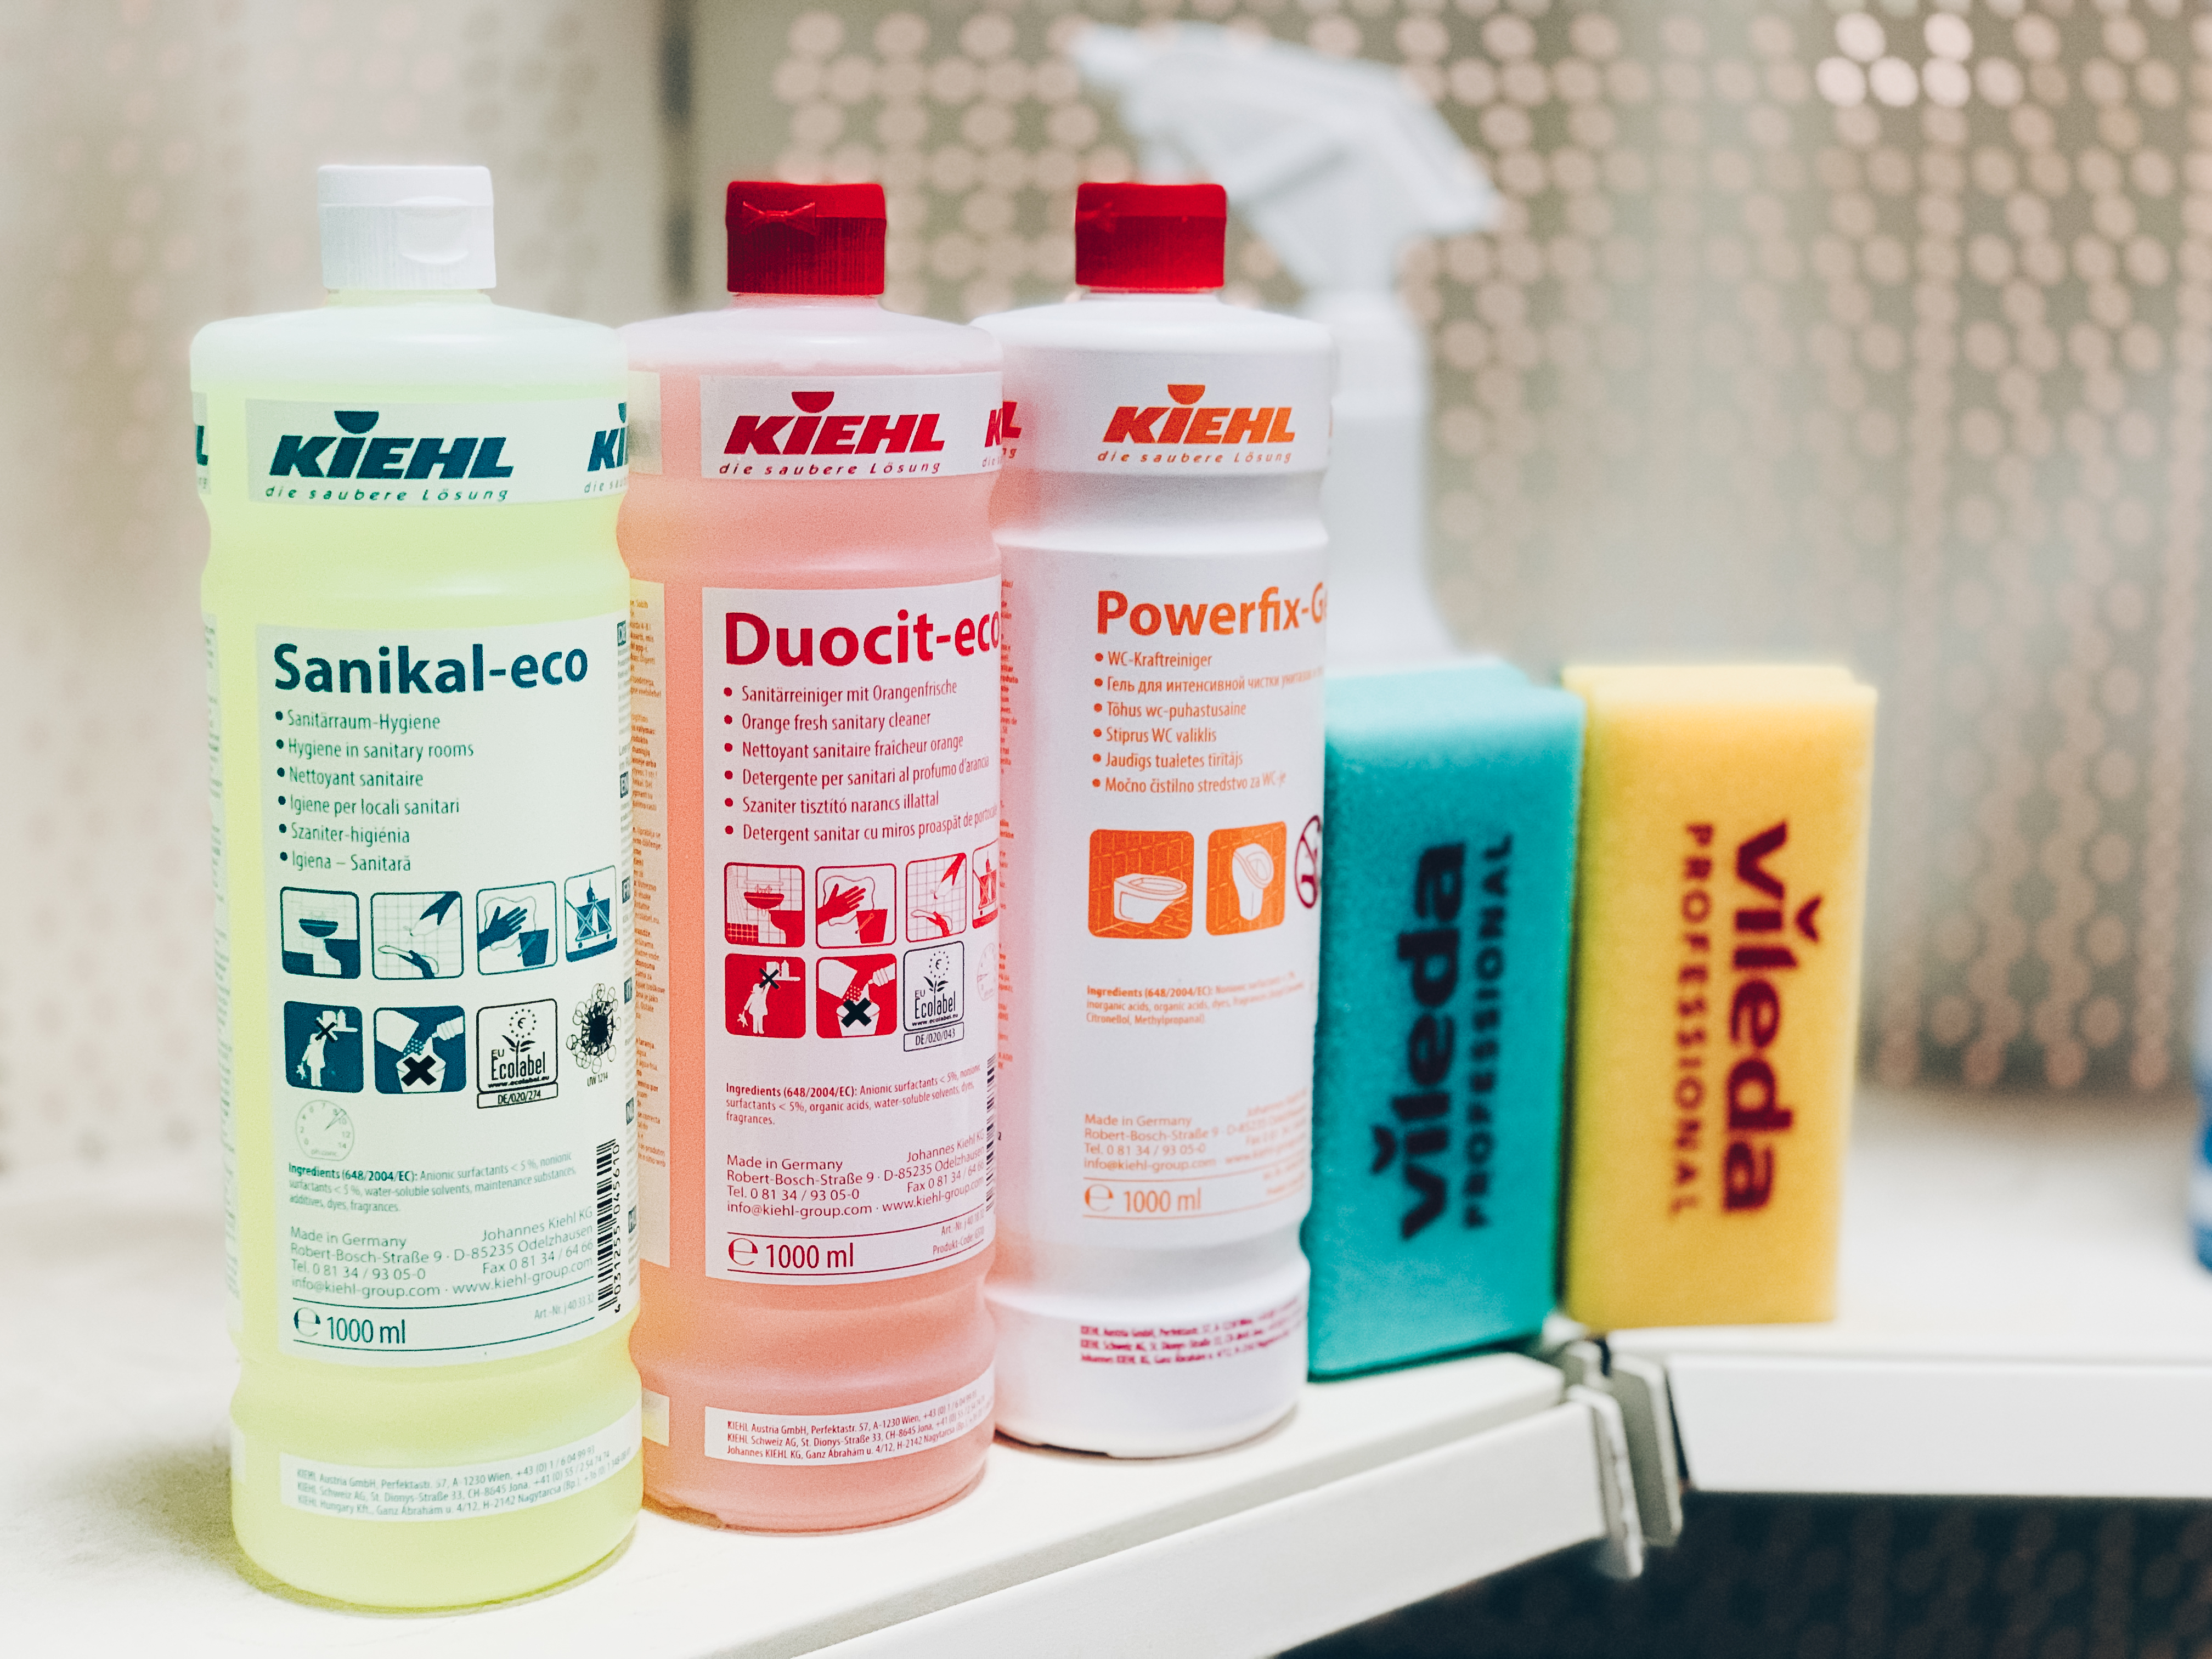 Duocit-eco чистящее средство для санитарных помещений со свежим апельсиновым запахом